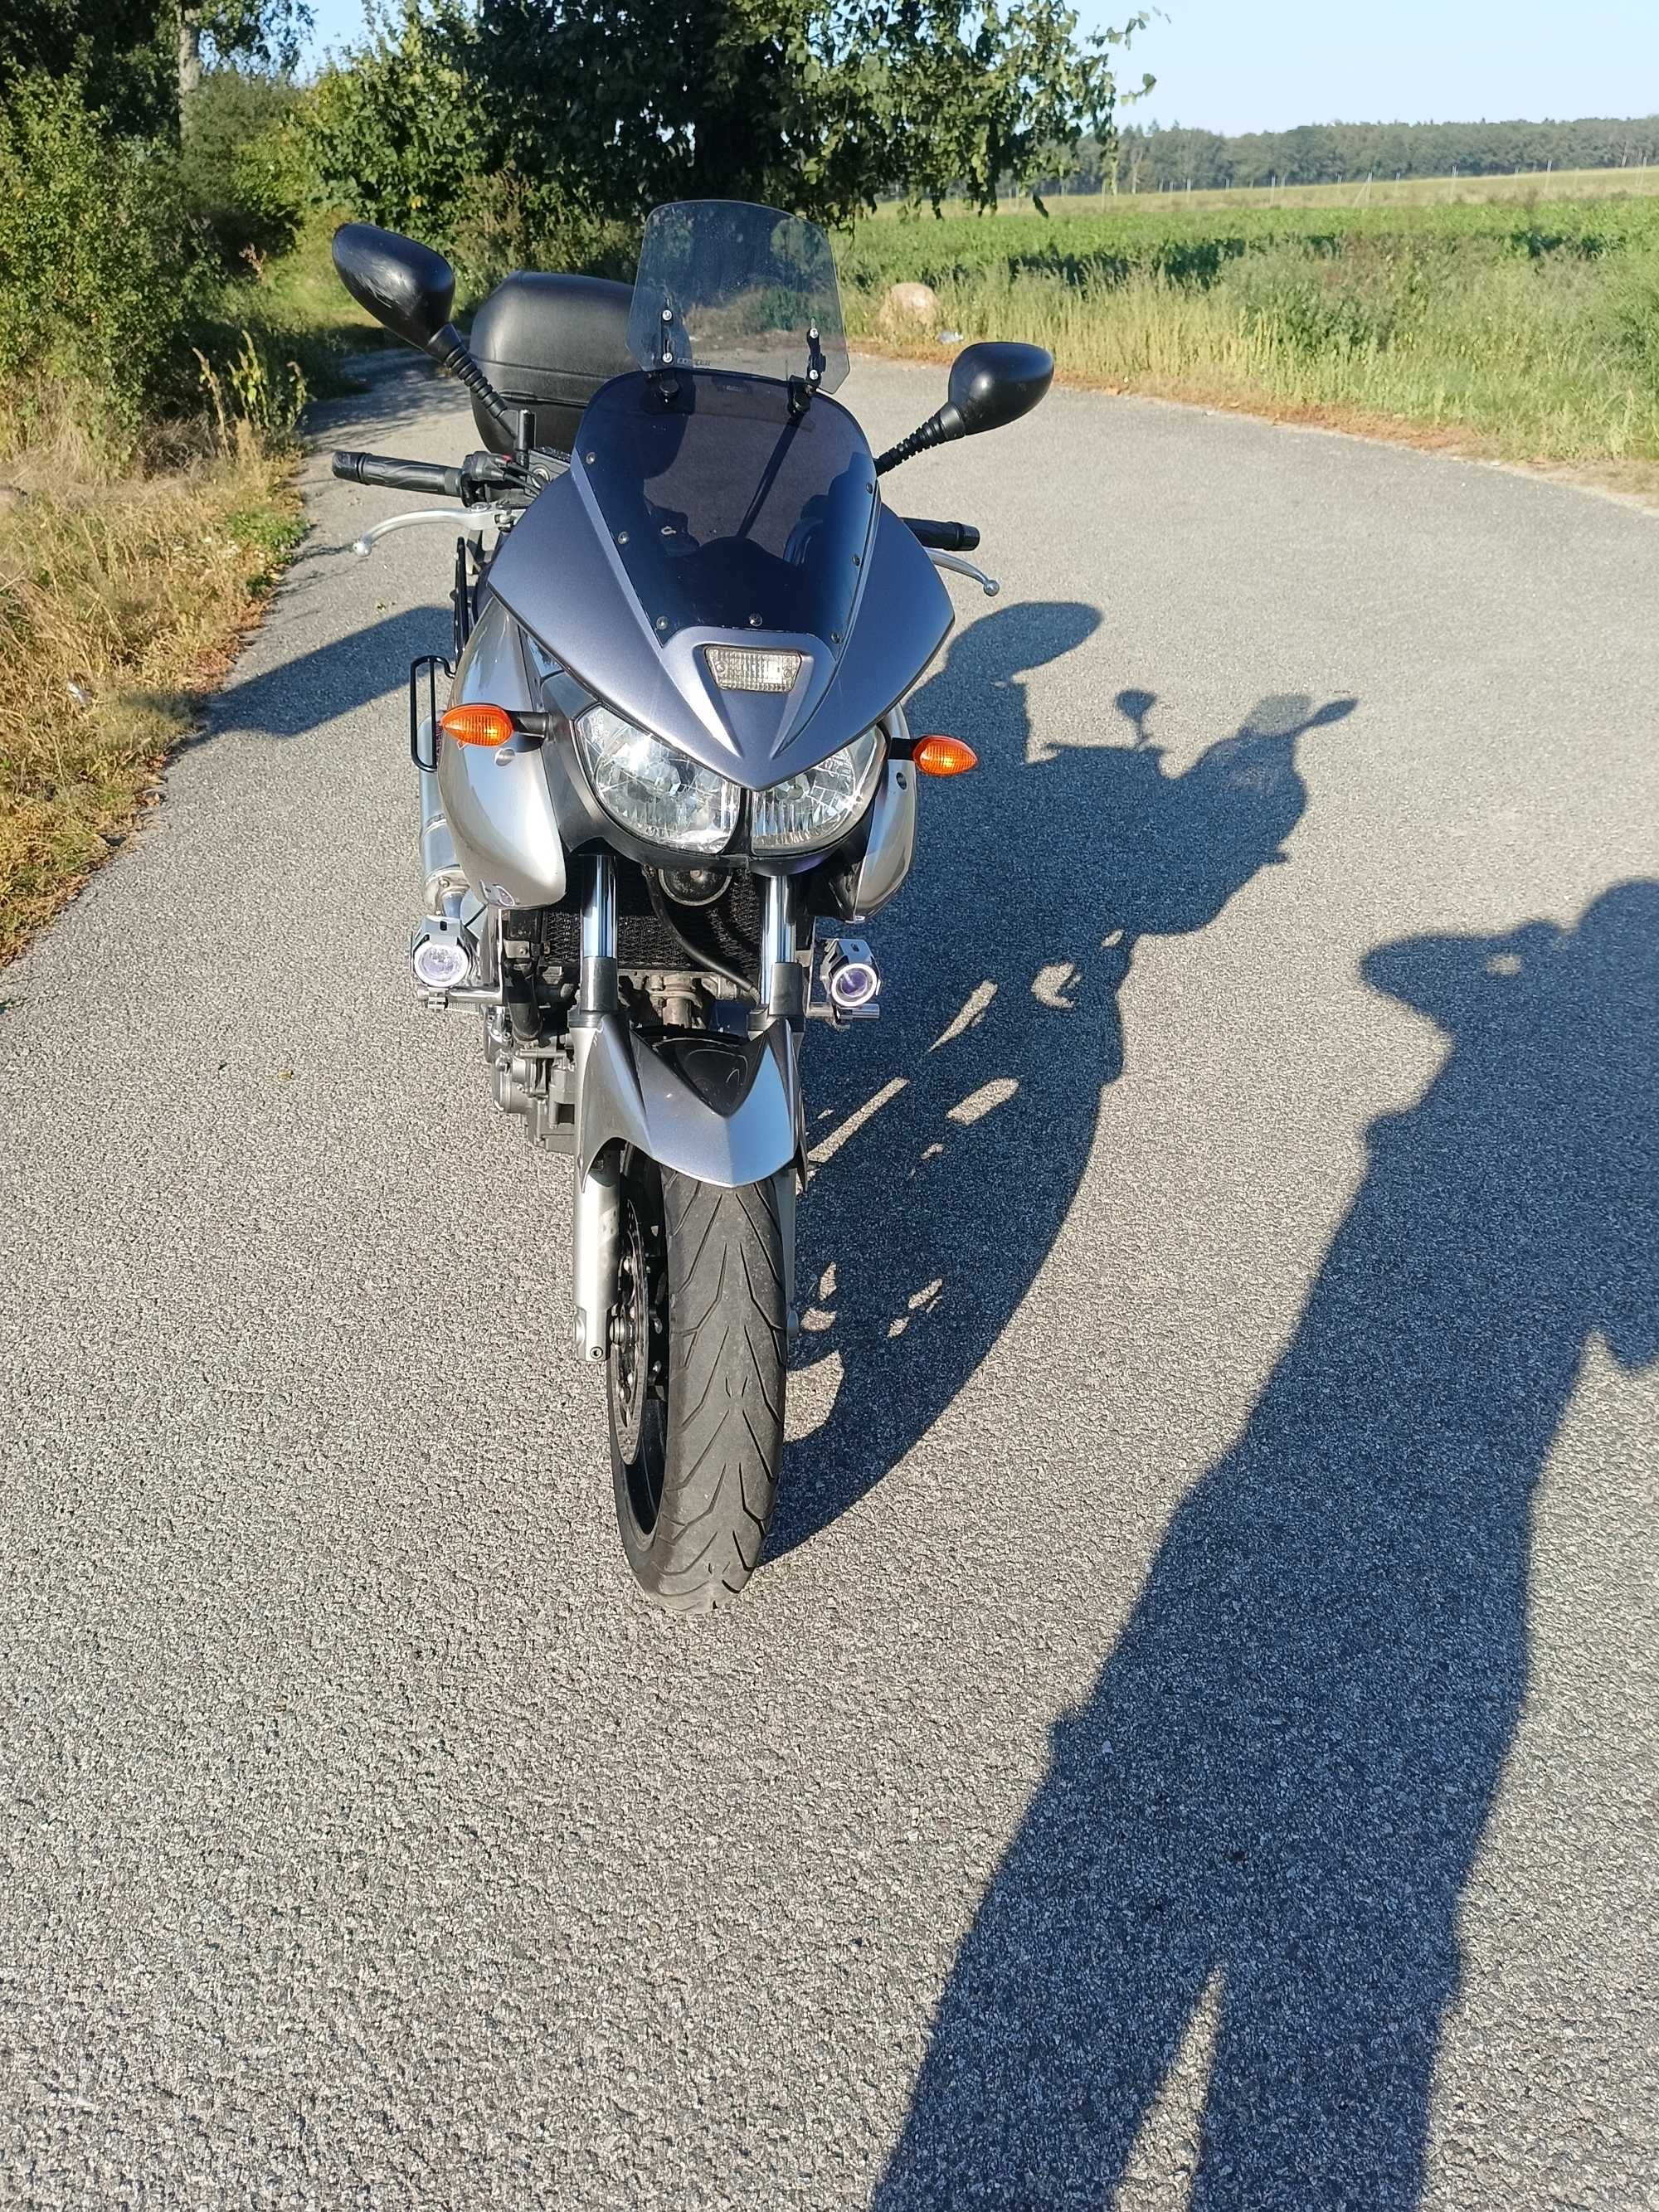 Motocykl YamahaTDM900